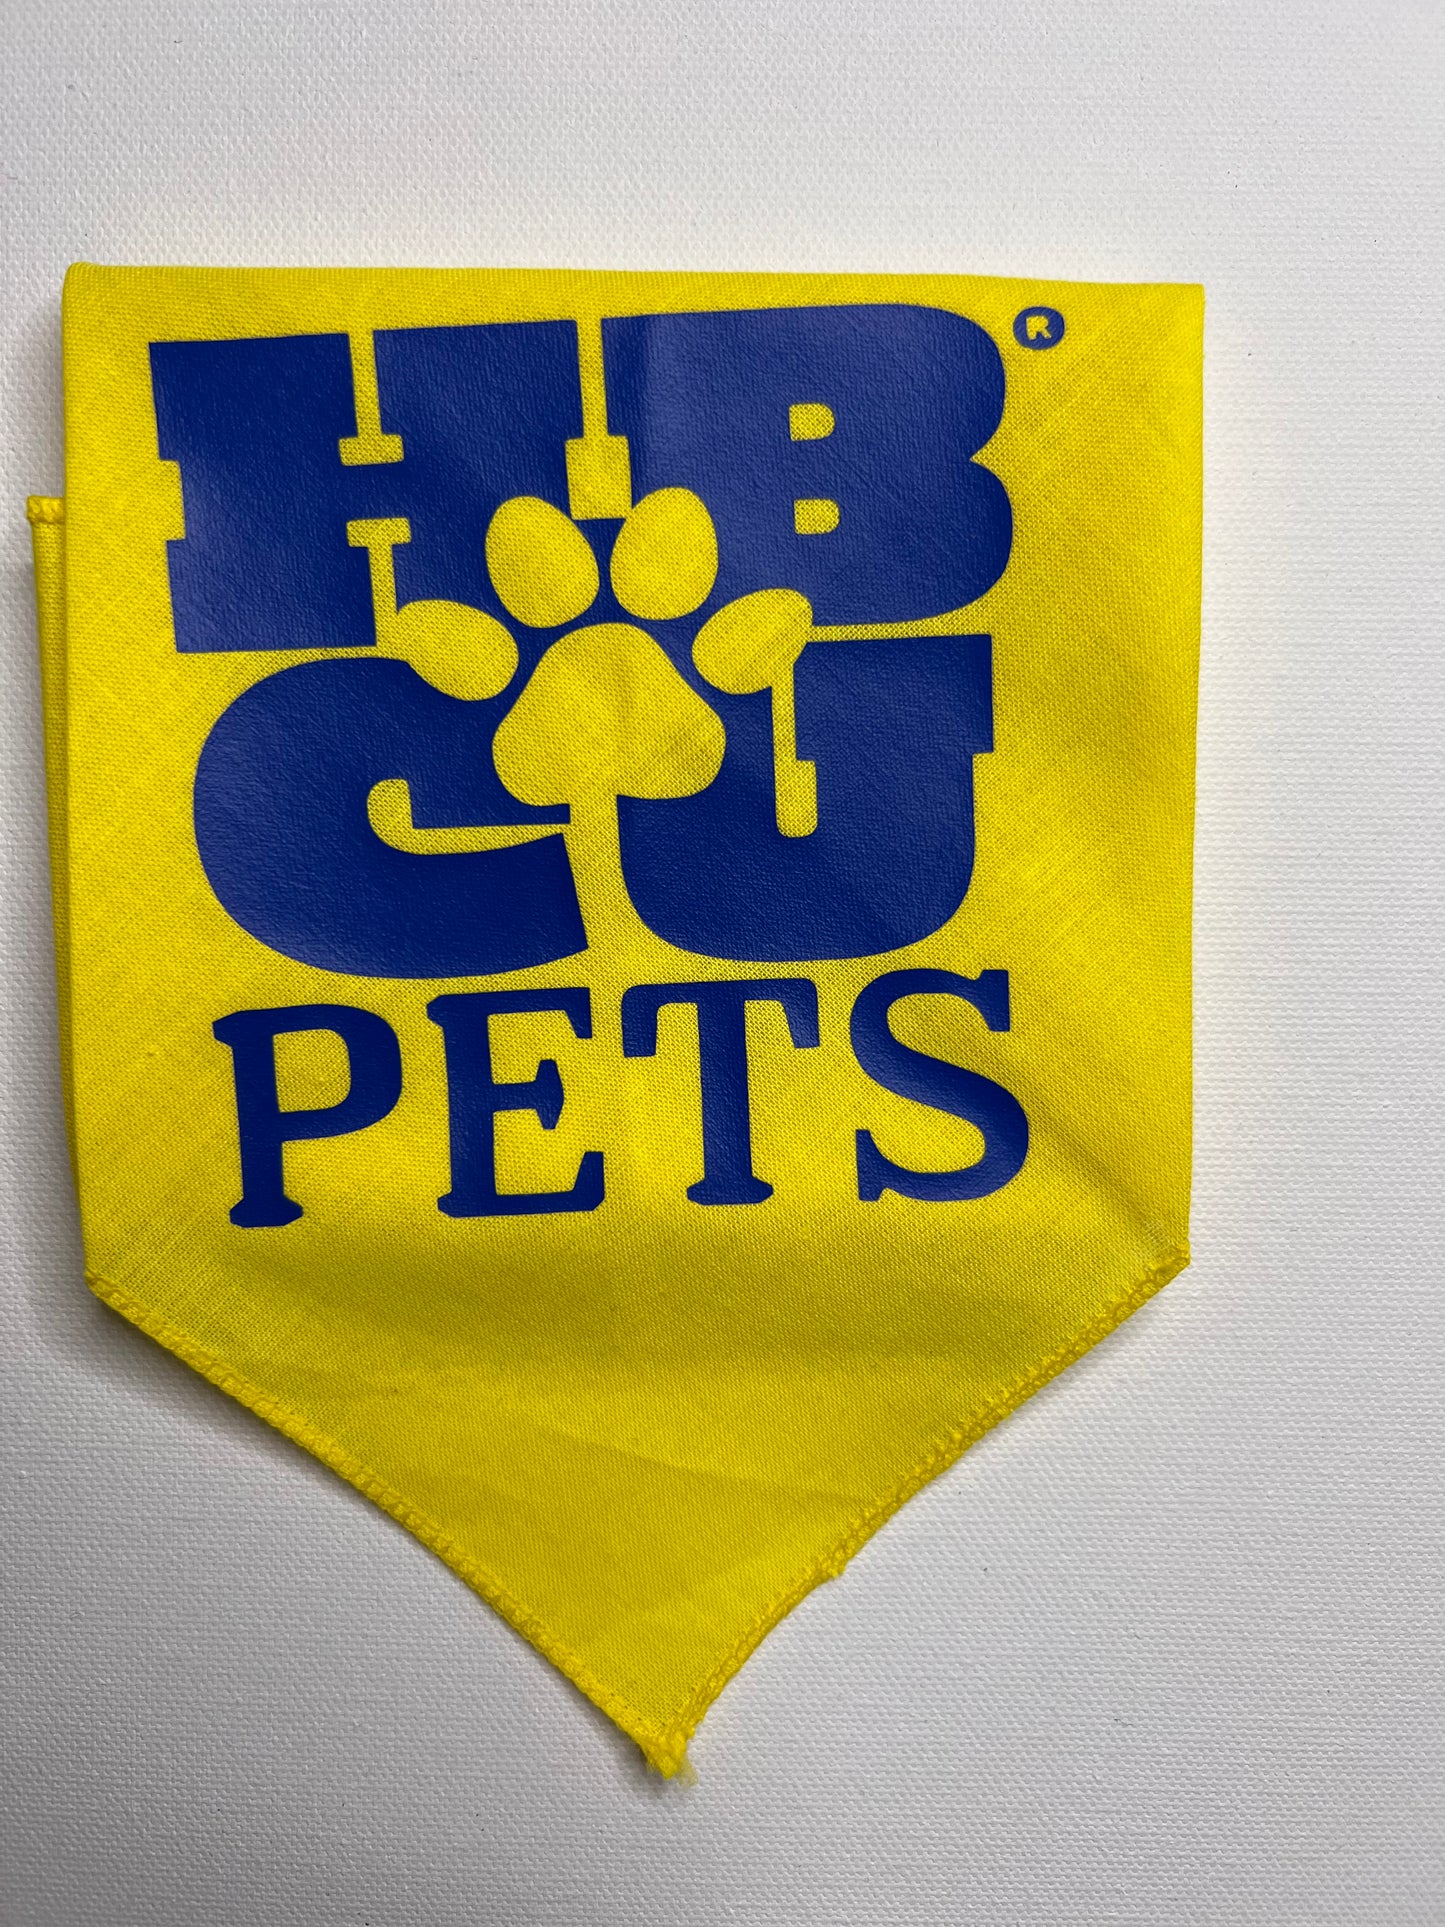 HBCU Pets Scarf Bandana- HBCU & Greek Colorways